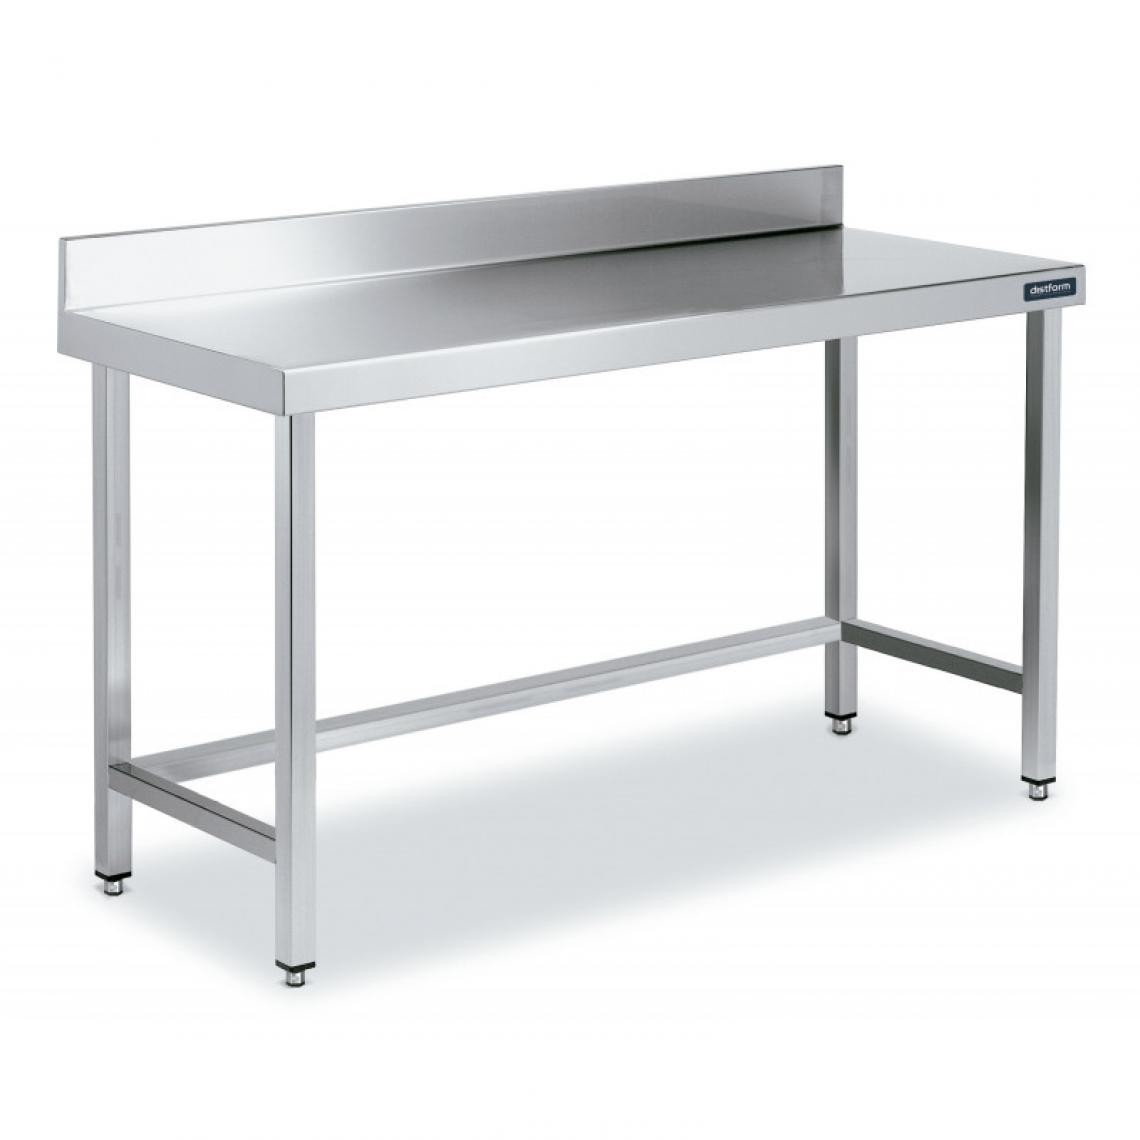 DISTFORM - Table Adossée en Inox avec Renforts Profondeur 600 mm - Distform - Acier inoxydable2200x600 - Tables à manger